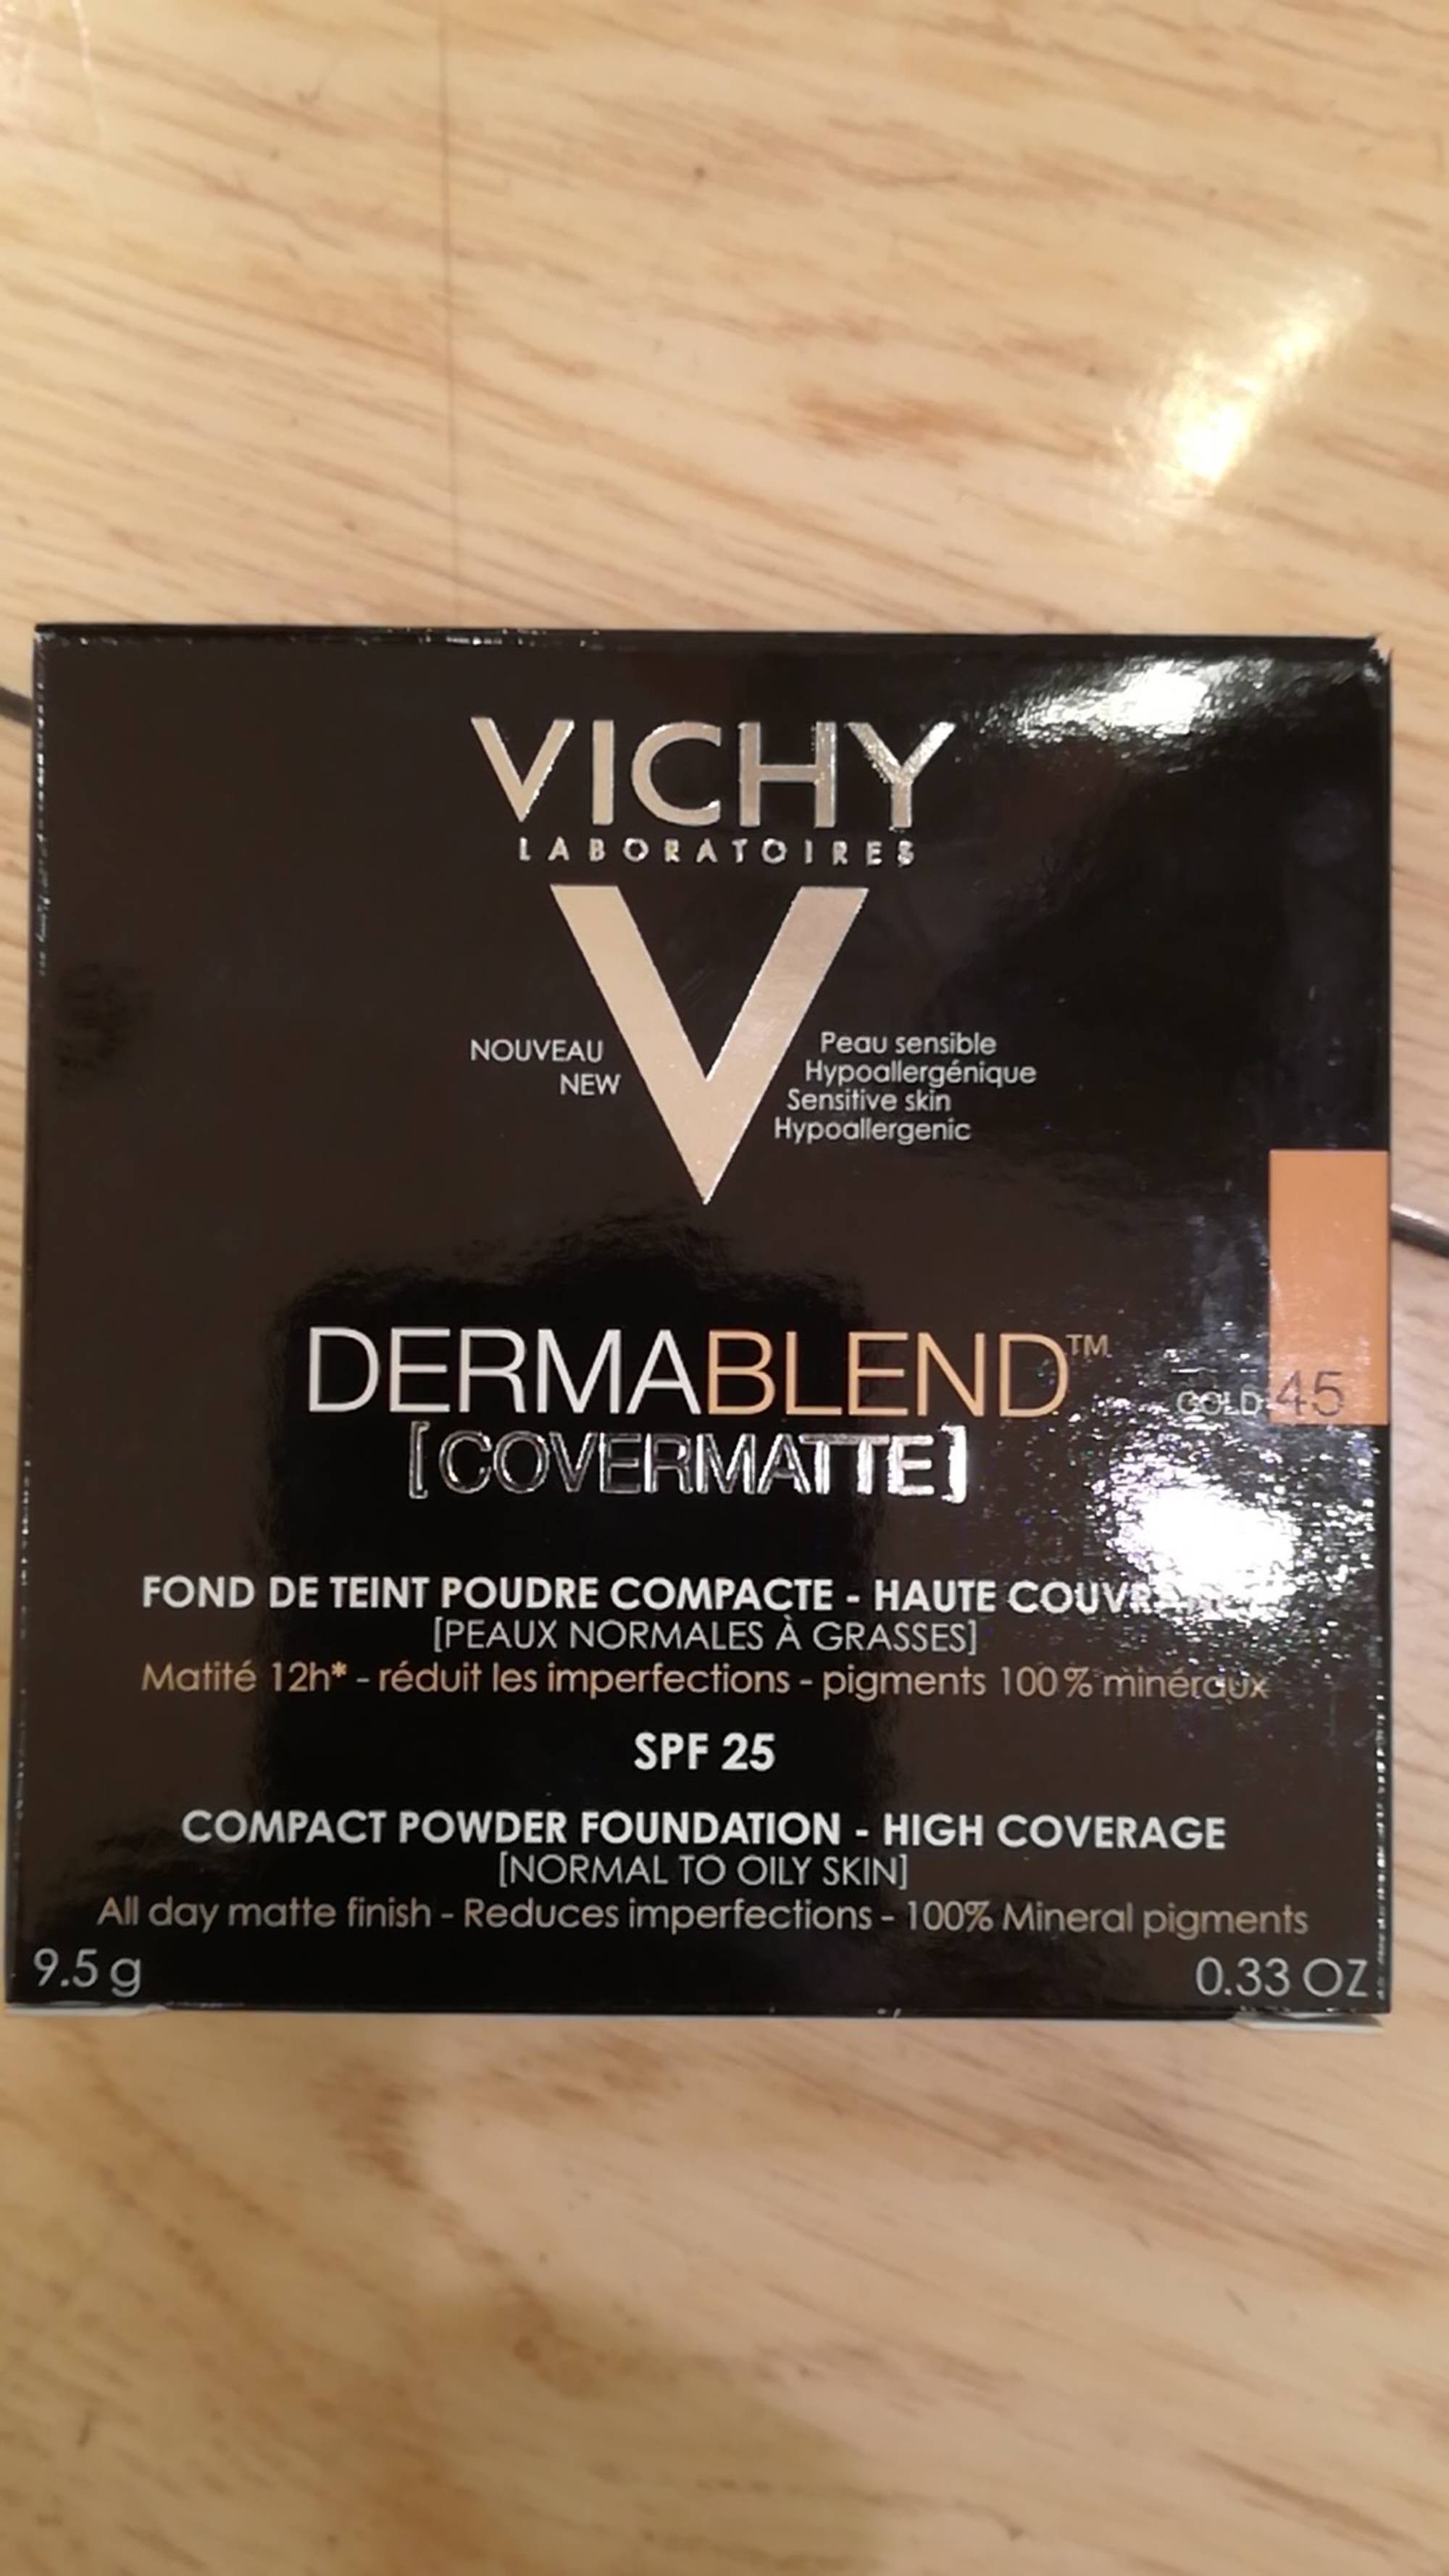 VICHY - Dermablend covermatte - Fond de teint poudre compacte SPF 15 - 45 Gold